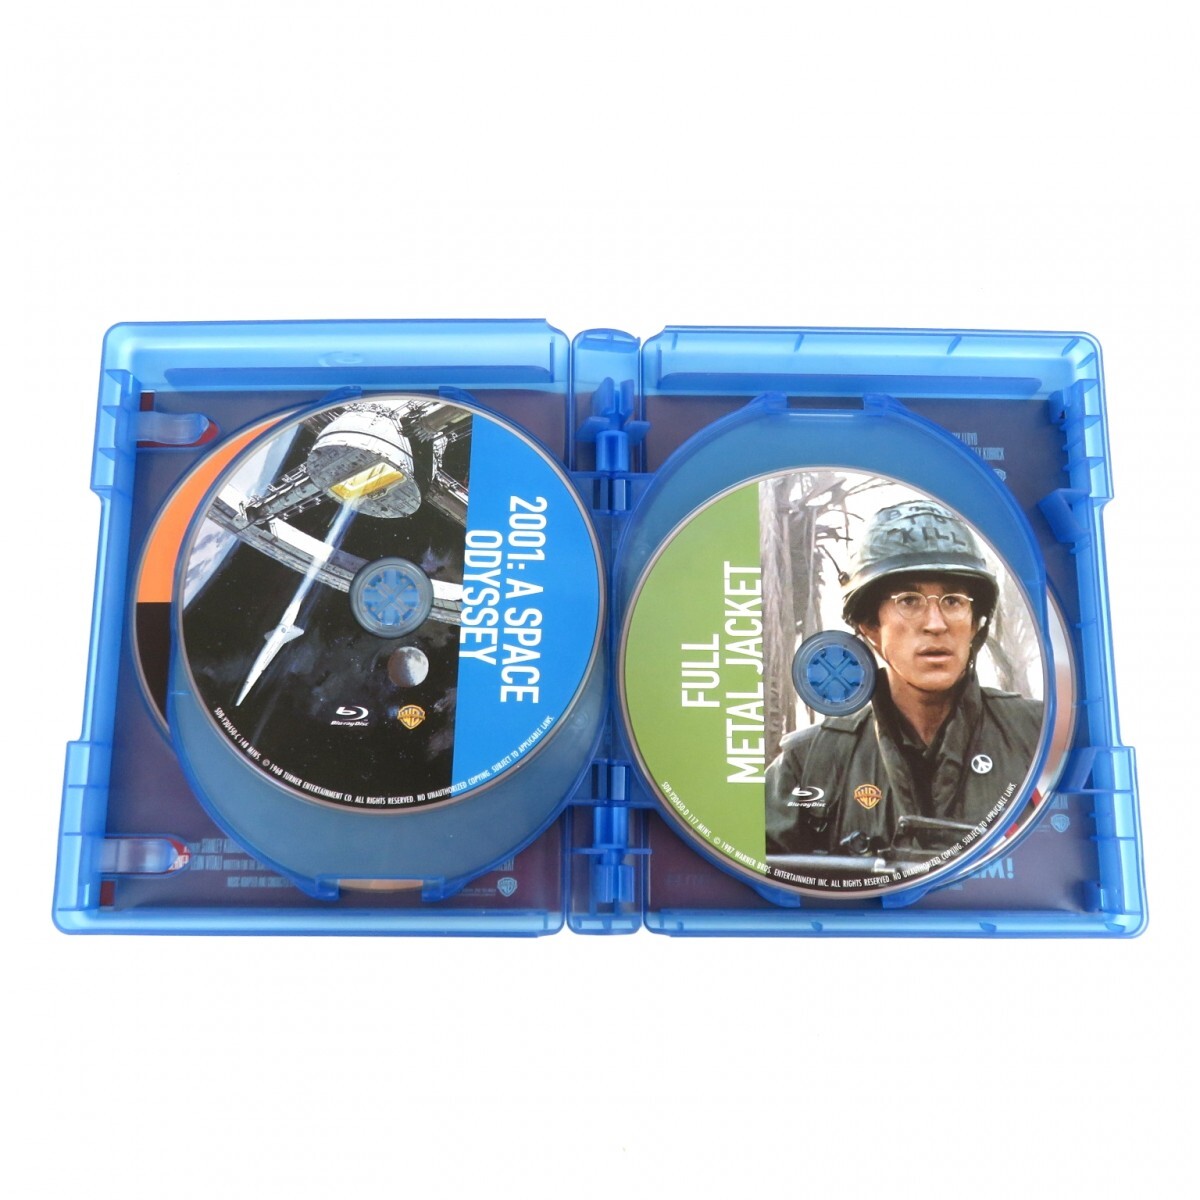 スタンリー・キューブリック 初回限定版 Blu-ray ブルーレイ BOX 全7作品 8枚組 時計じかけのオレンジ シャイニング ブックレット 0505-068_画像5